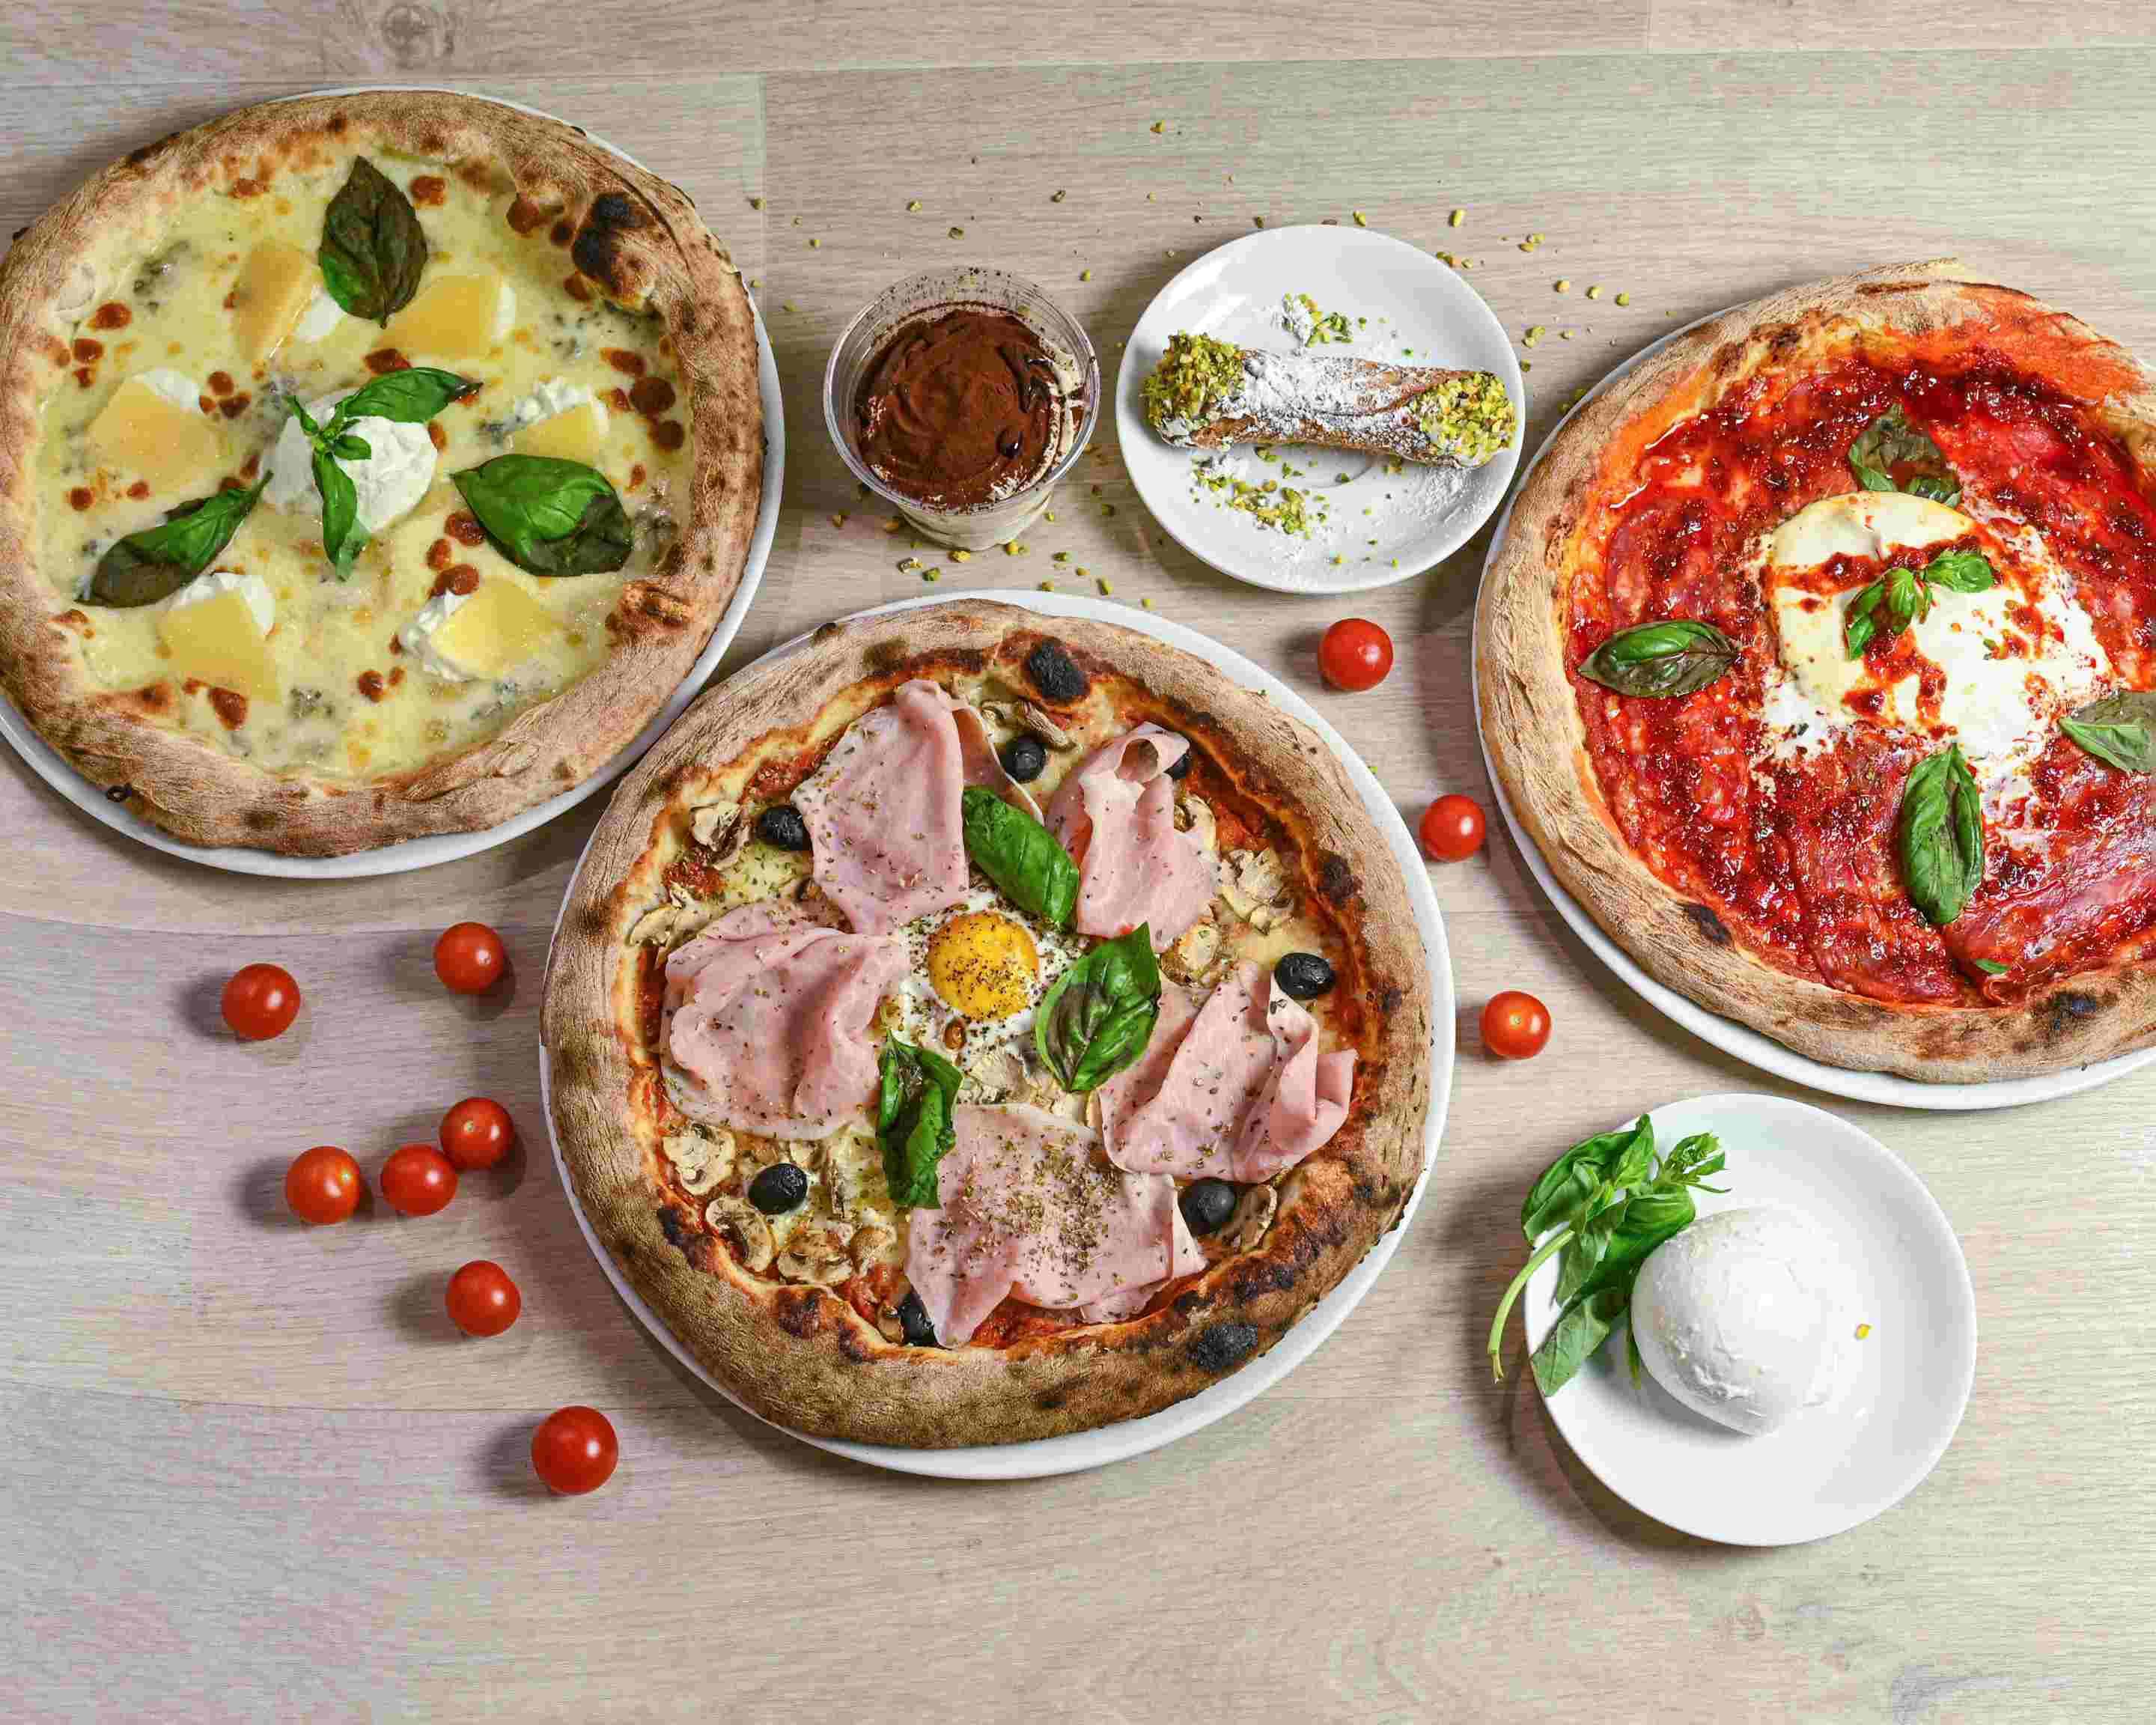 Sicilia Pizza Menu Delivery Online, Nice【Menu & Prices】